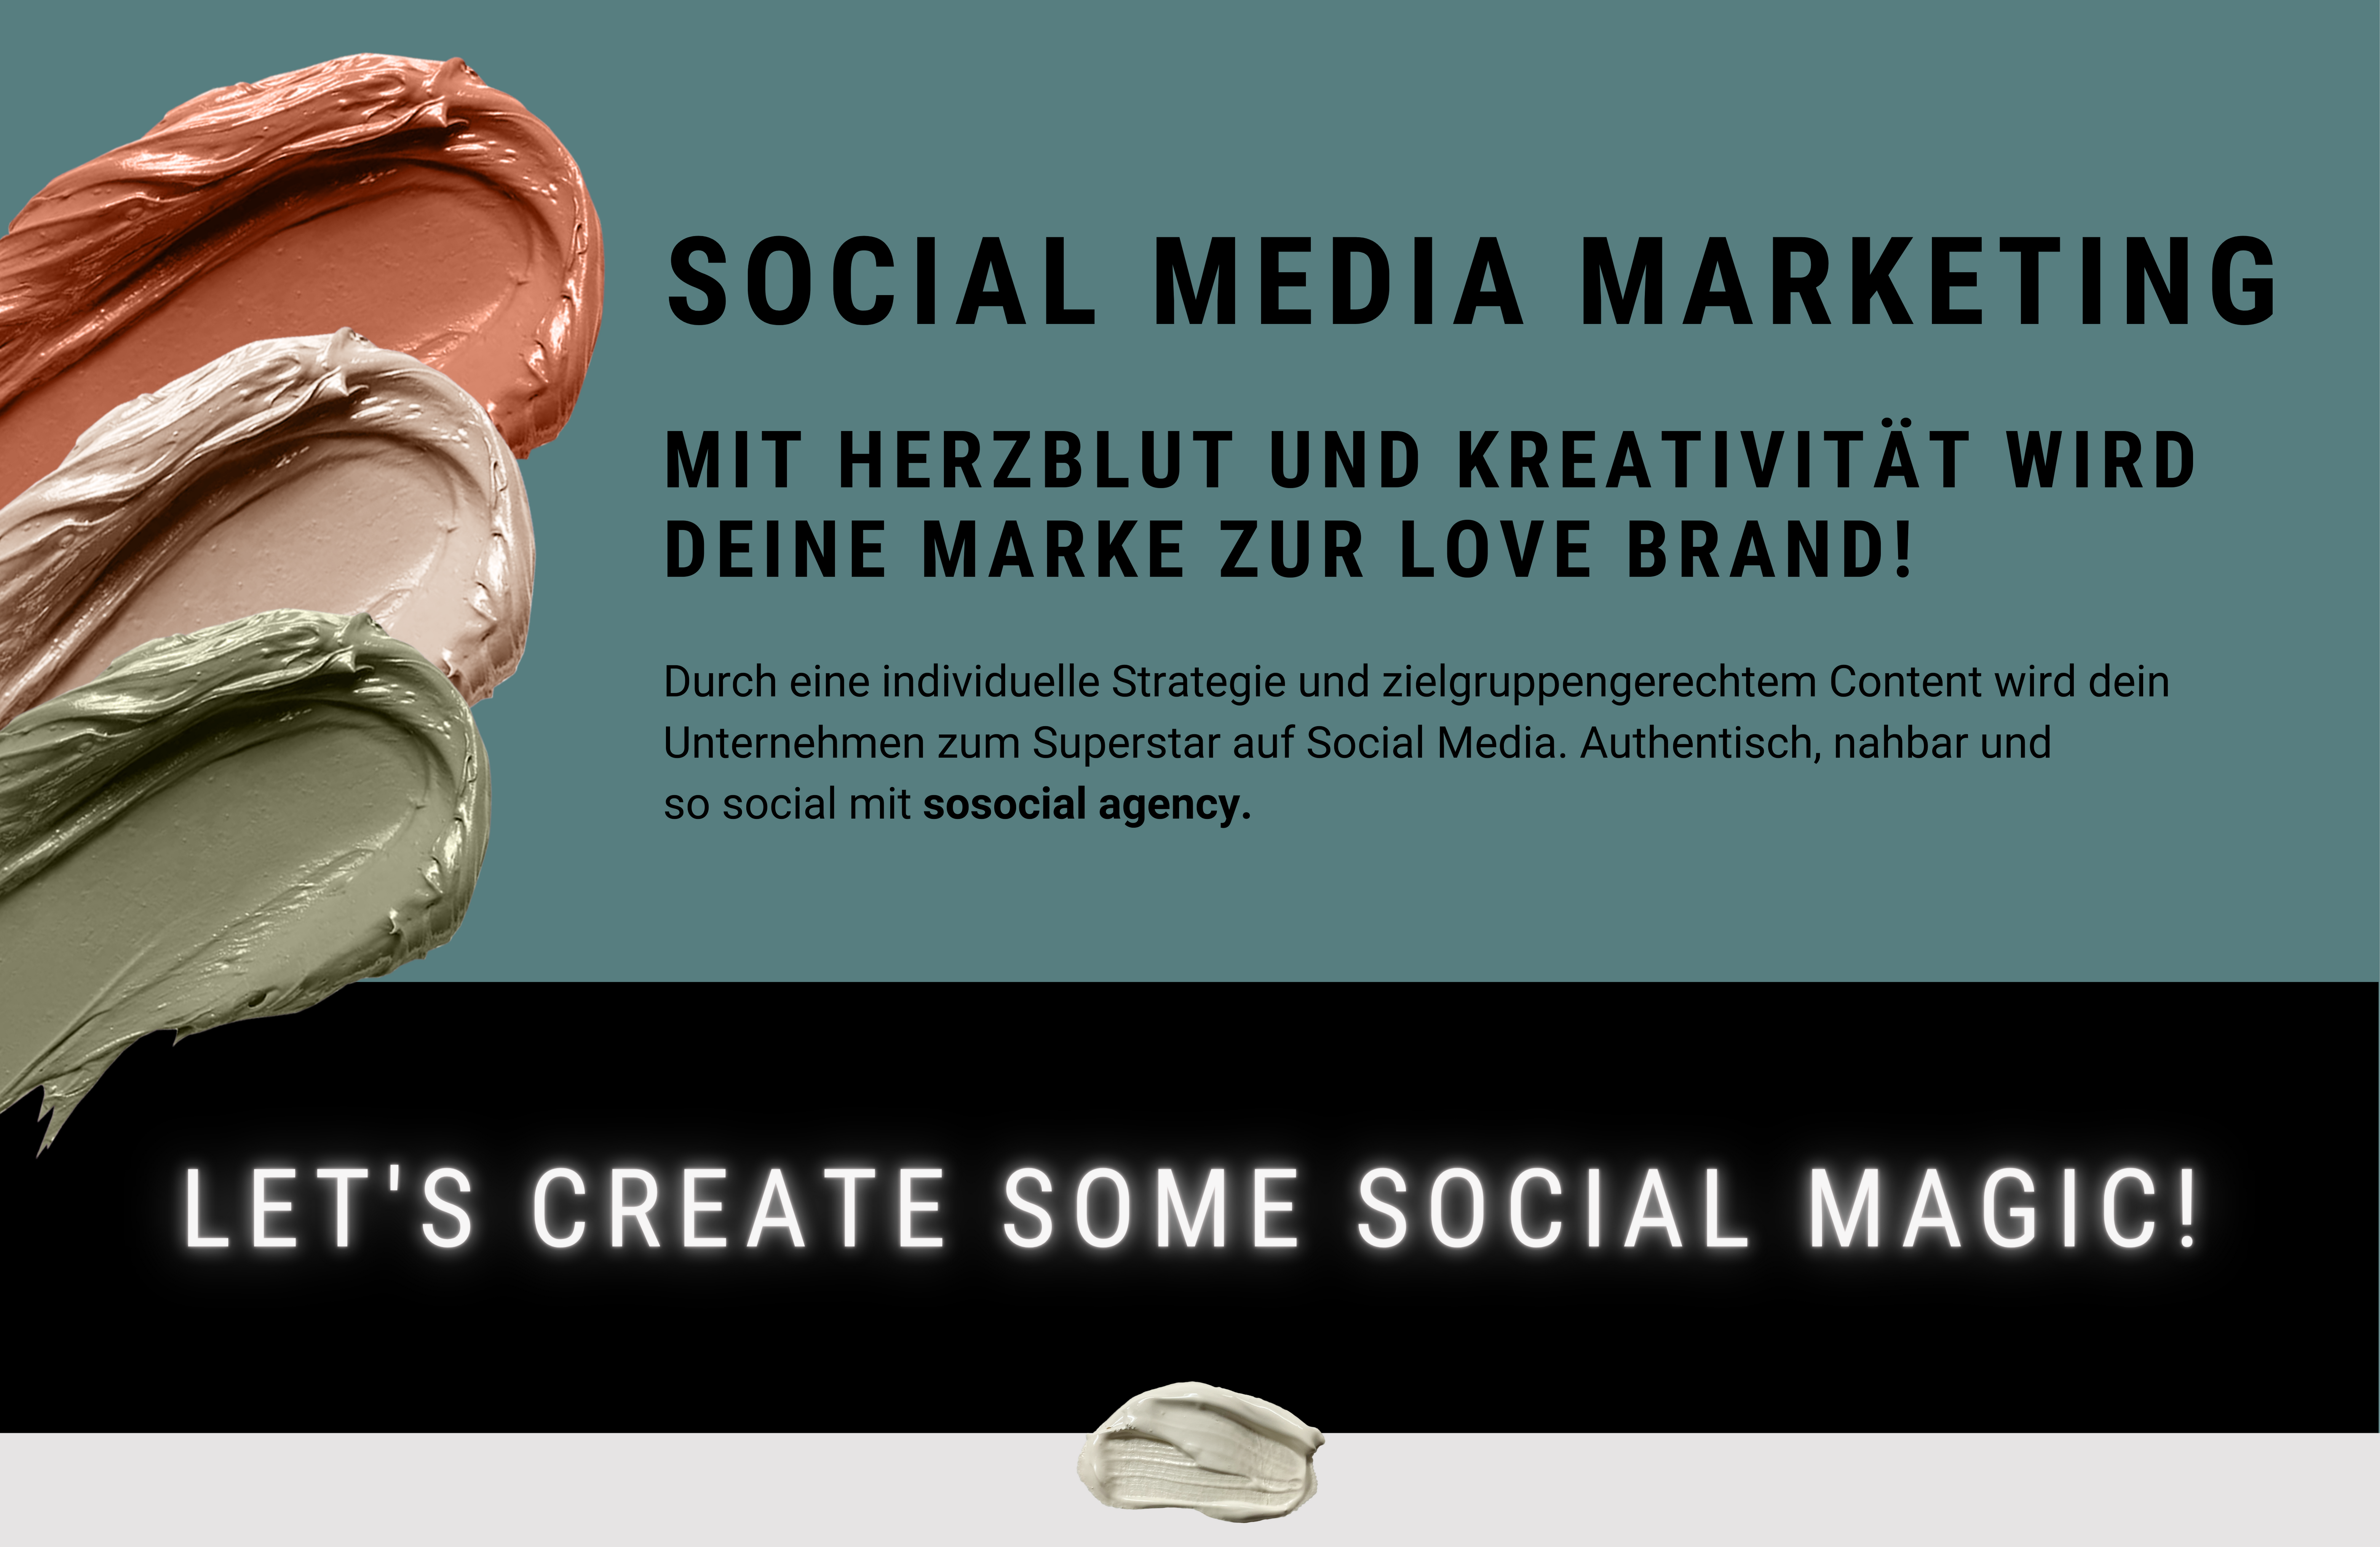 Social Media Marketing. Mit Herzblut und Kreativität wird deine Marke zur Love Brand! Individuelle Strategie, zielgruppengerechter Content, authentisch und nahbar.